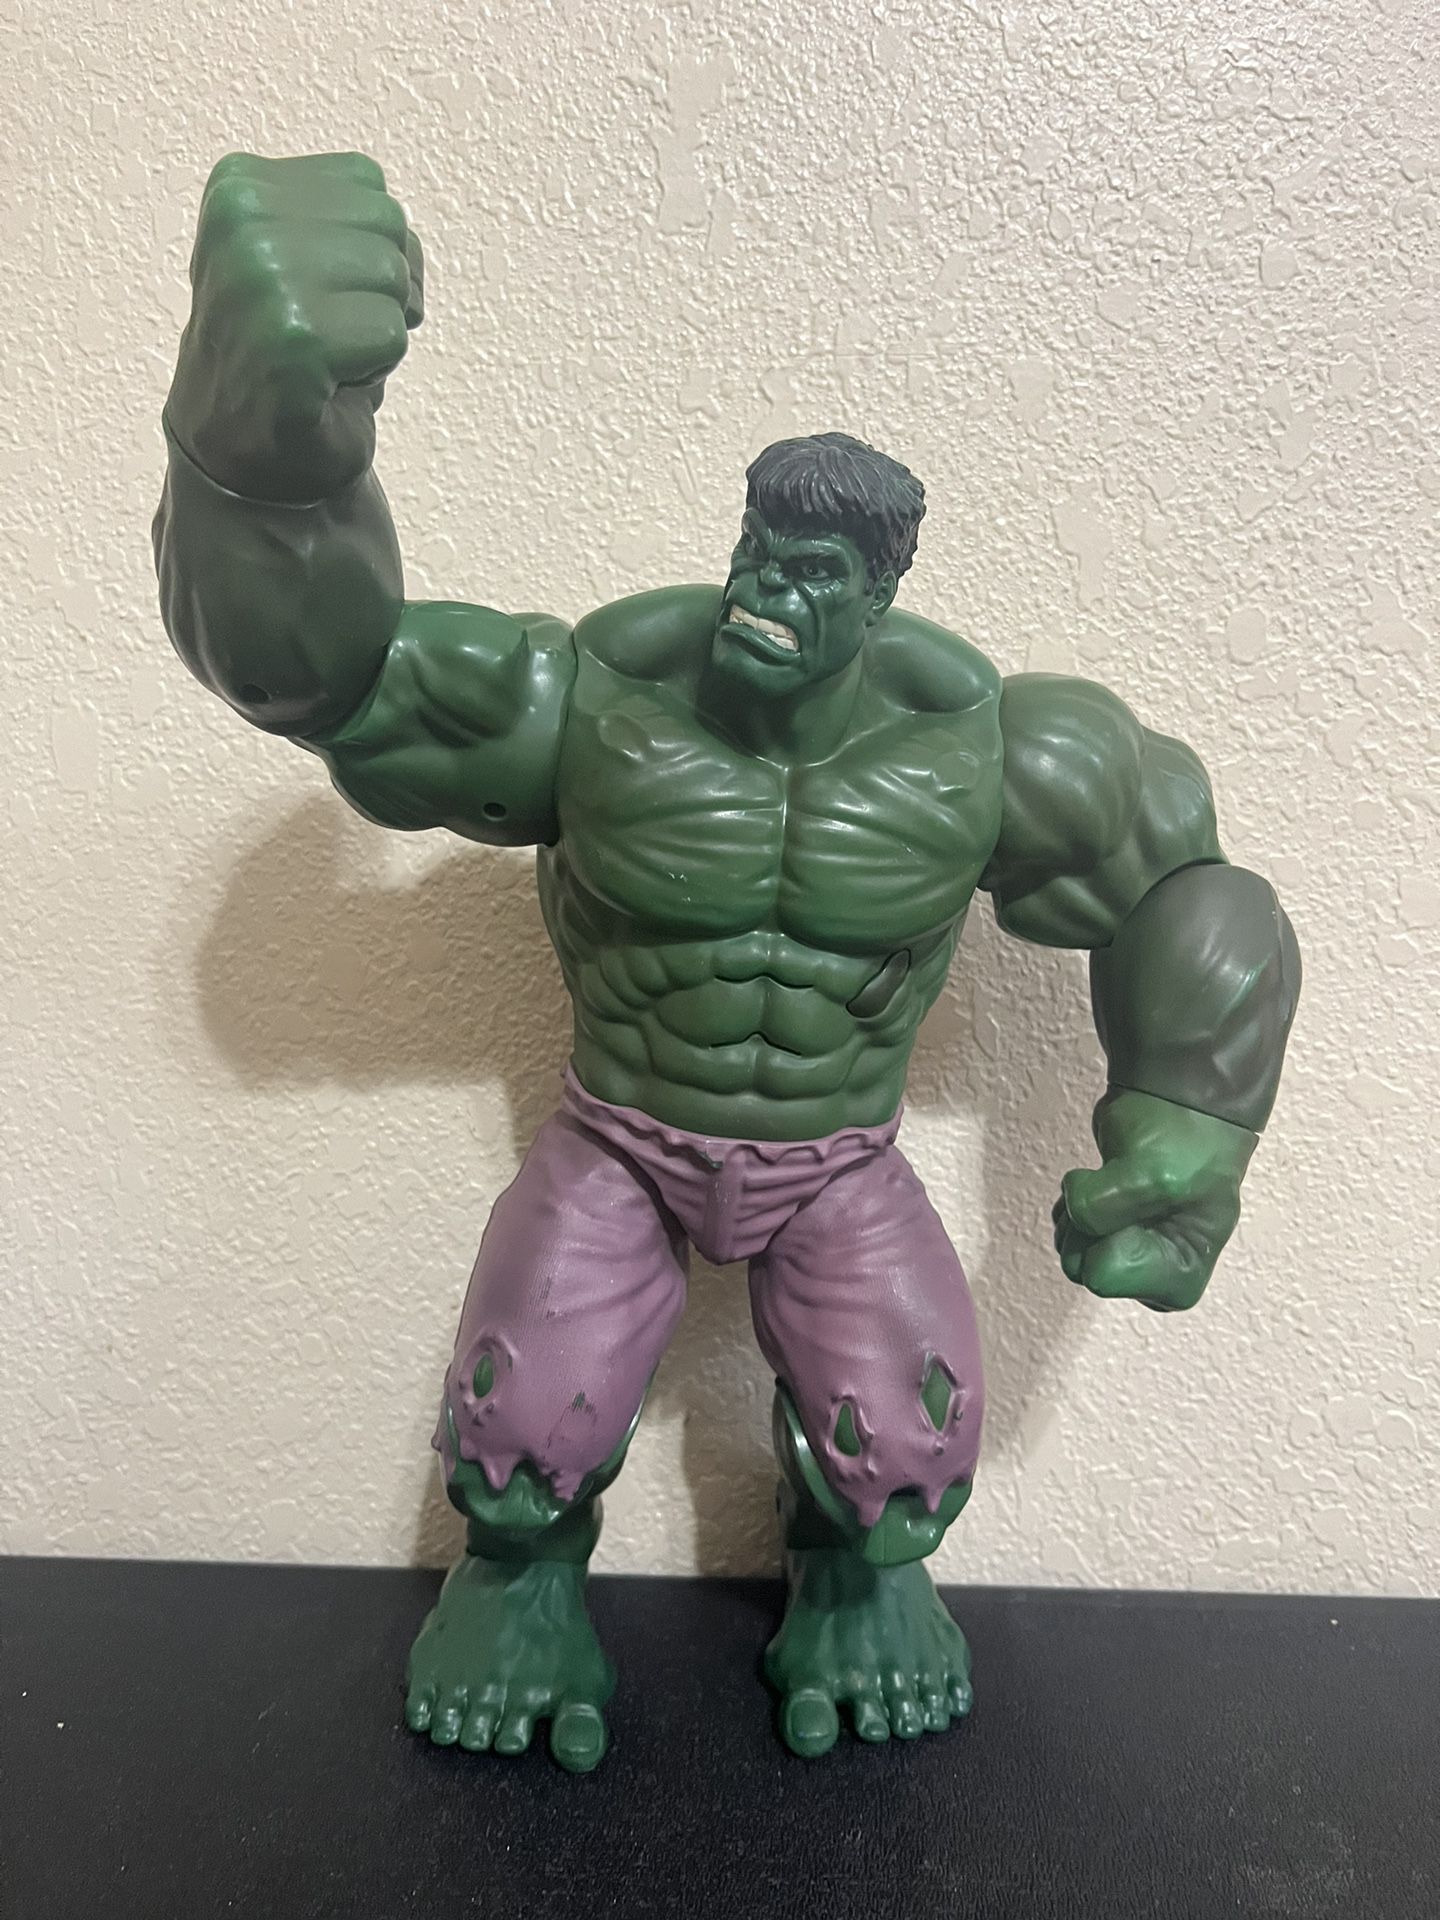 Hulk Smash 